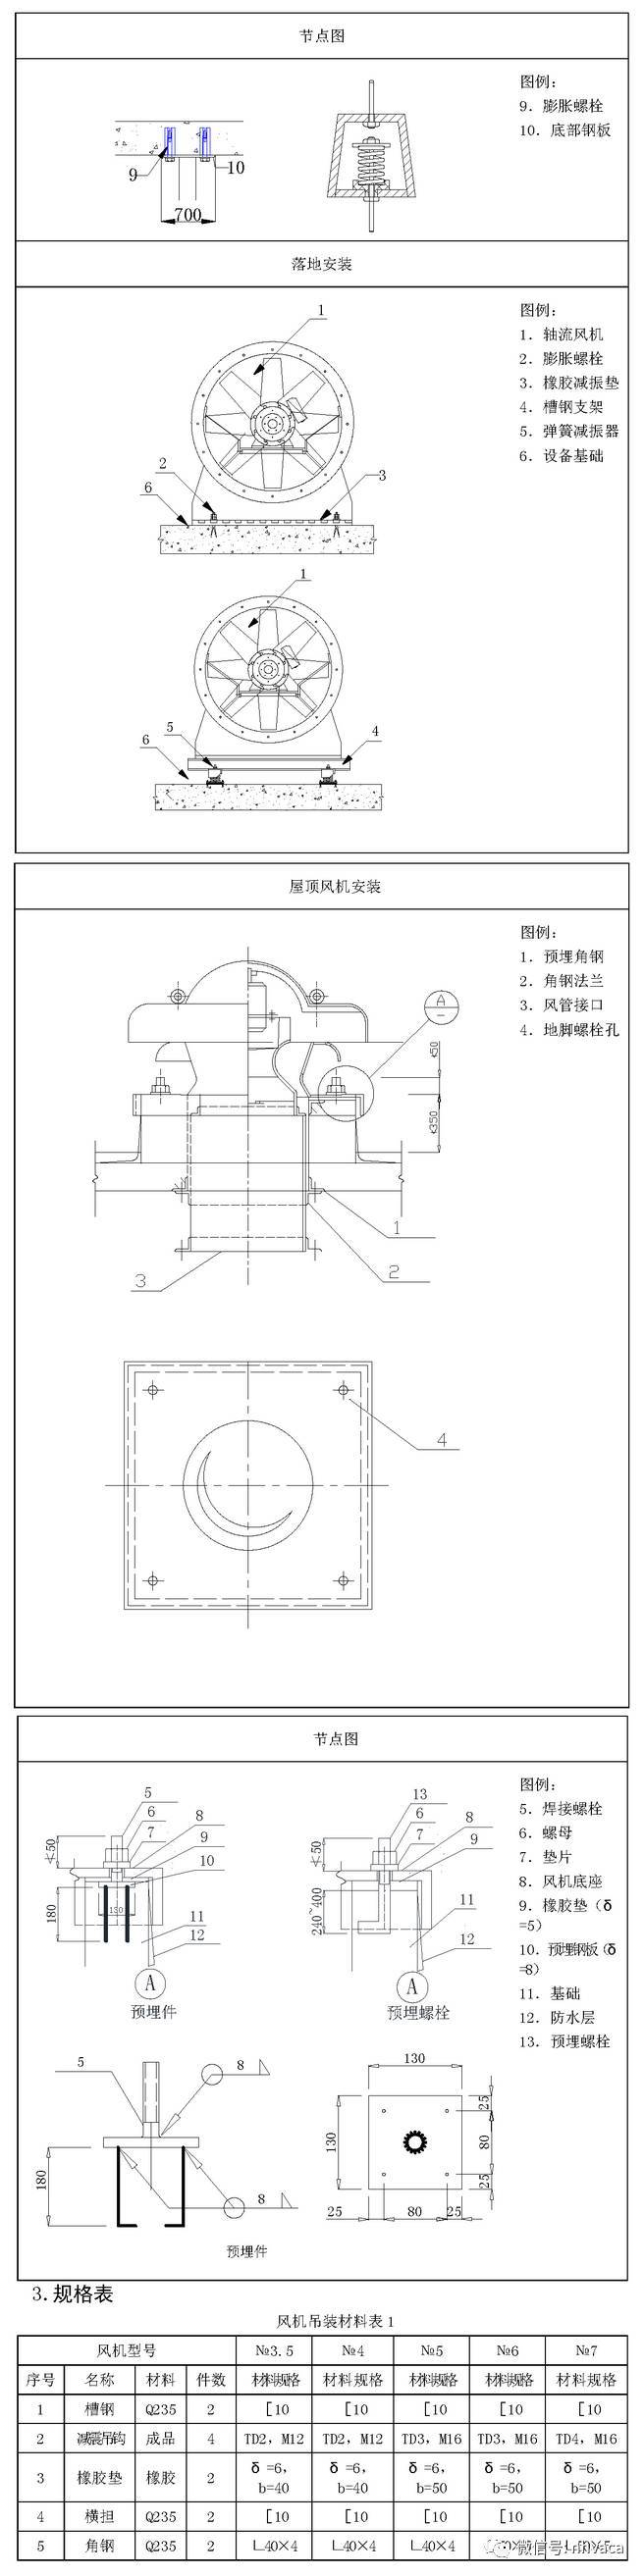 暖通空调施工工艺标准图集（53张图）_45